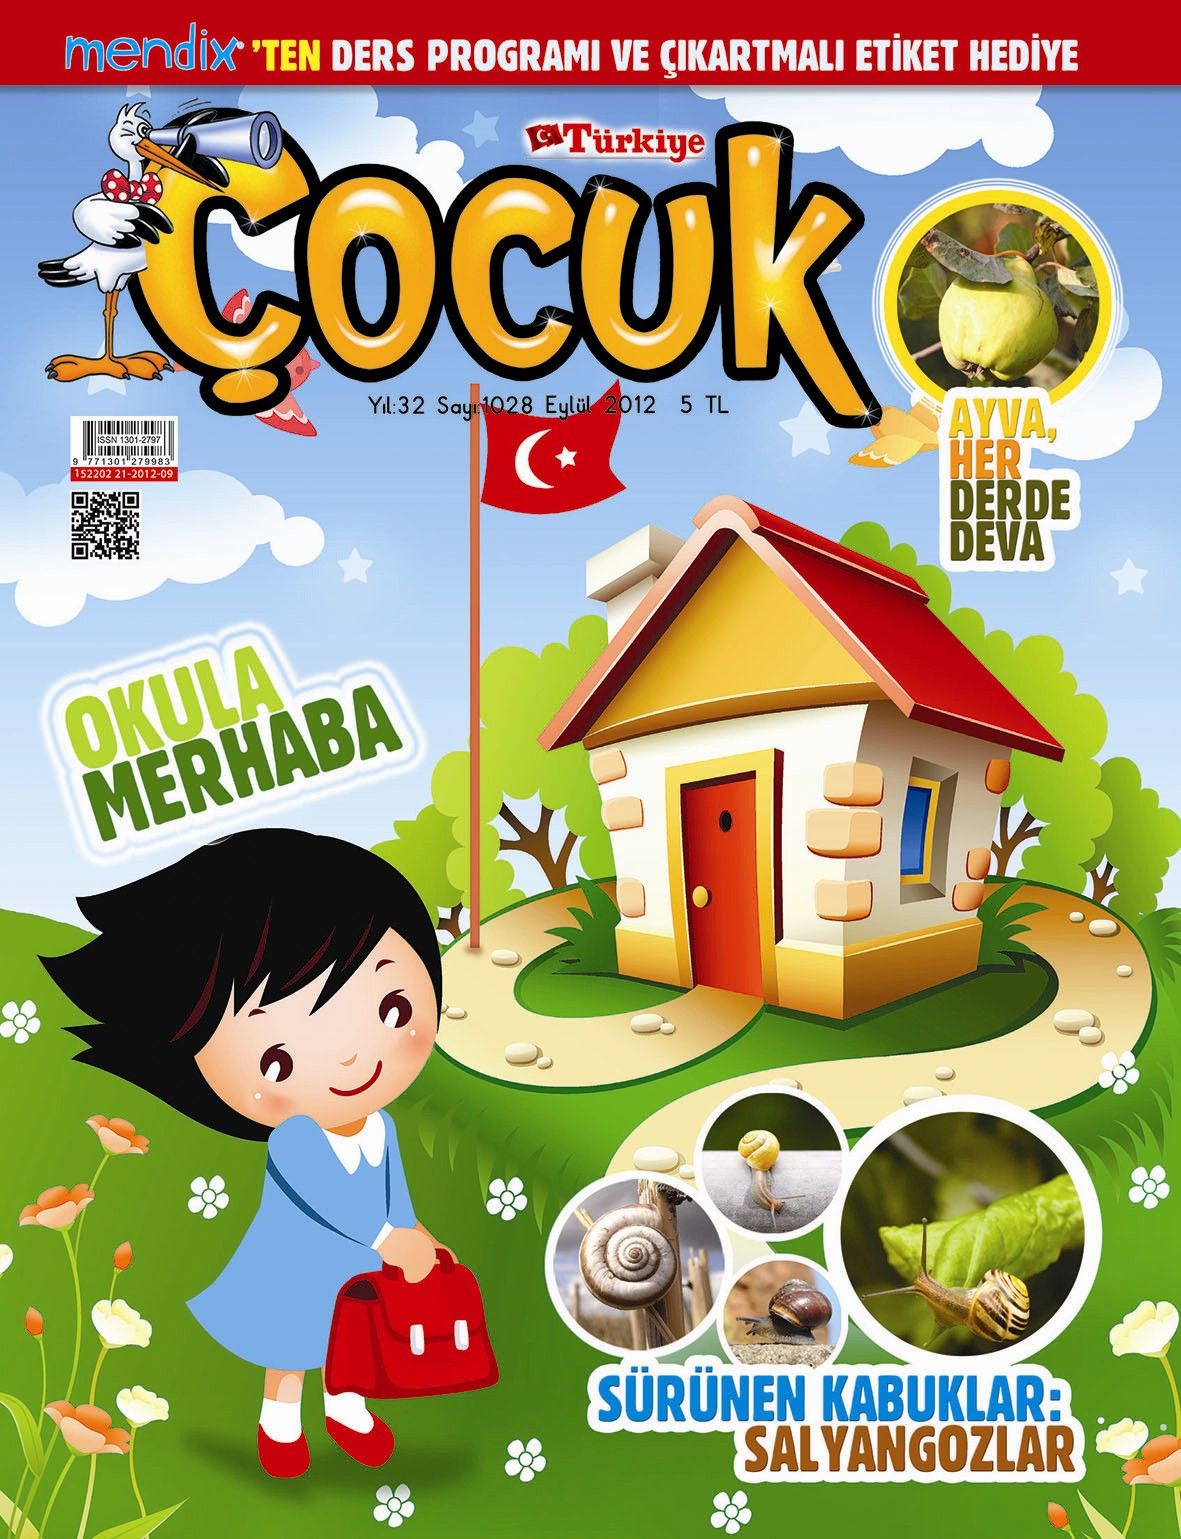 Türkiye Çocuk dergisinin eylül sayısı çıktı